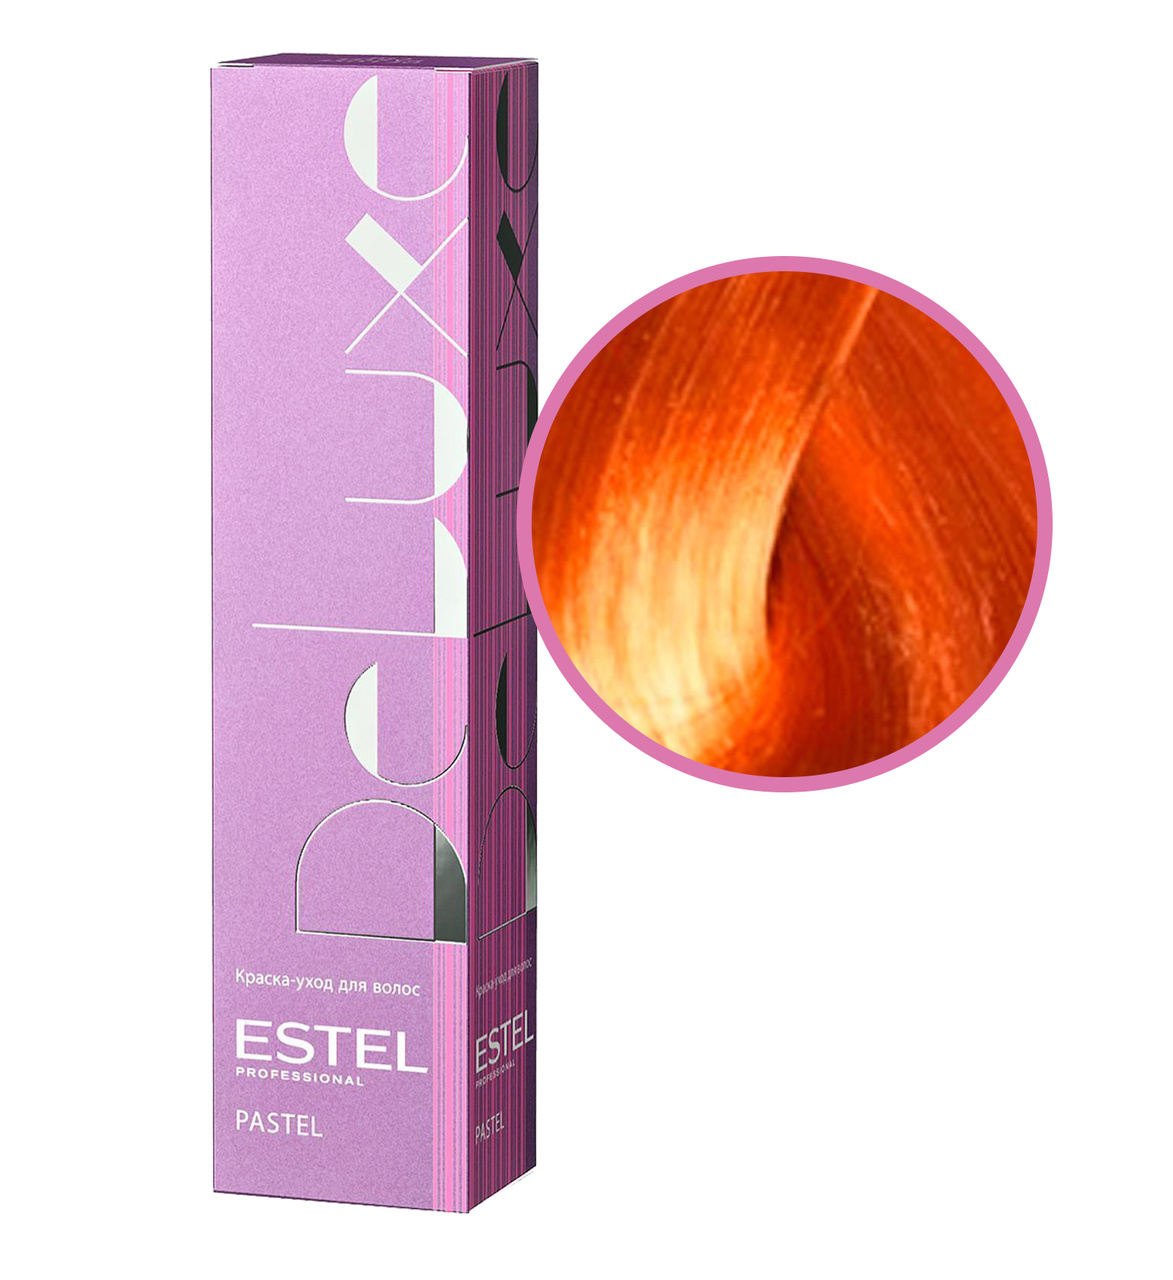 Тонирующие профессиональные краски. Estel professional краска для волос de Luxe Pastel p/004 персик. Краска для волос Estel Deluxe Pastel персик. Estel Deluxe Pastel краска. Estel Делюкс краска рыжая.